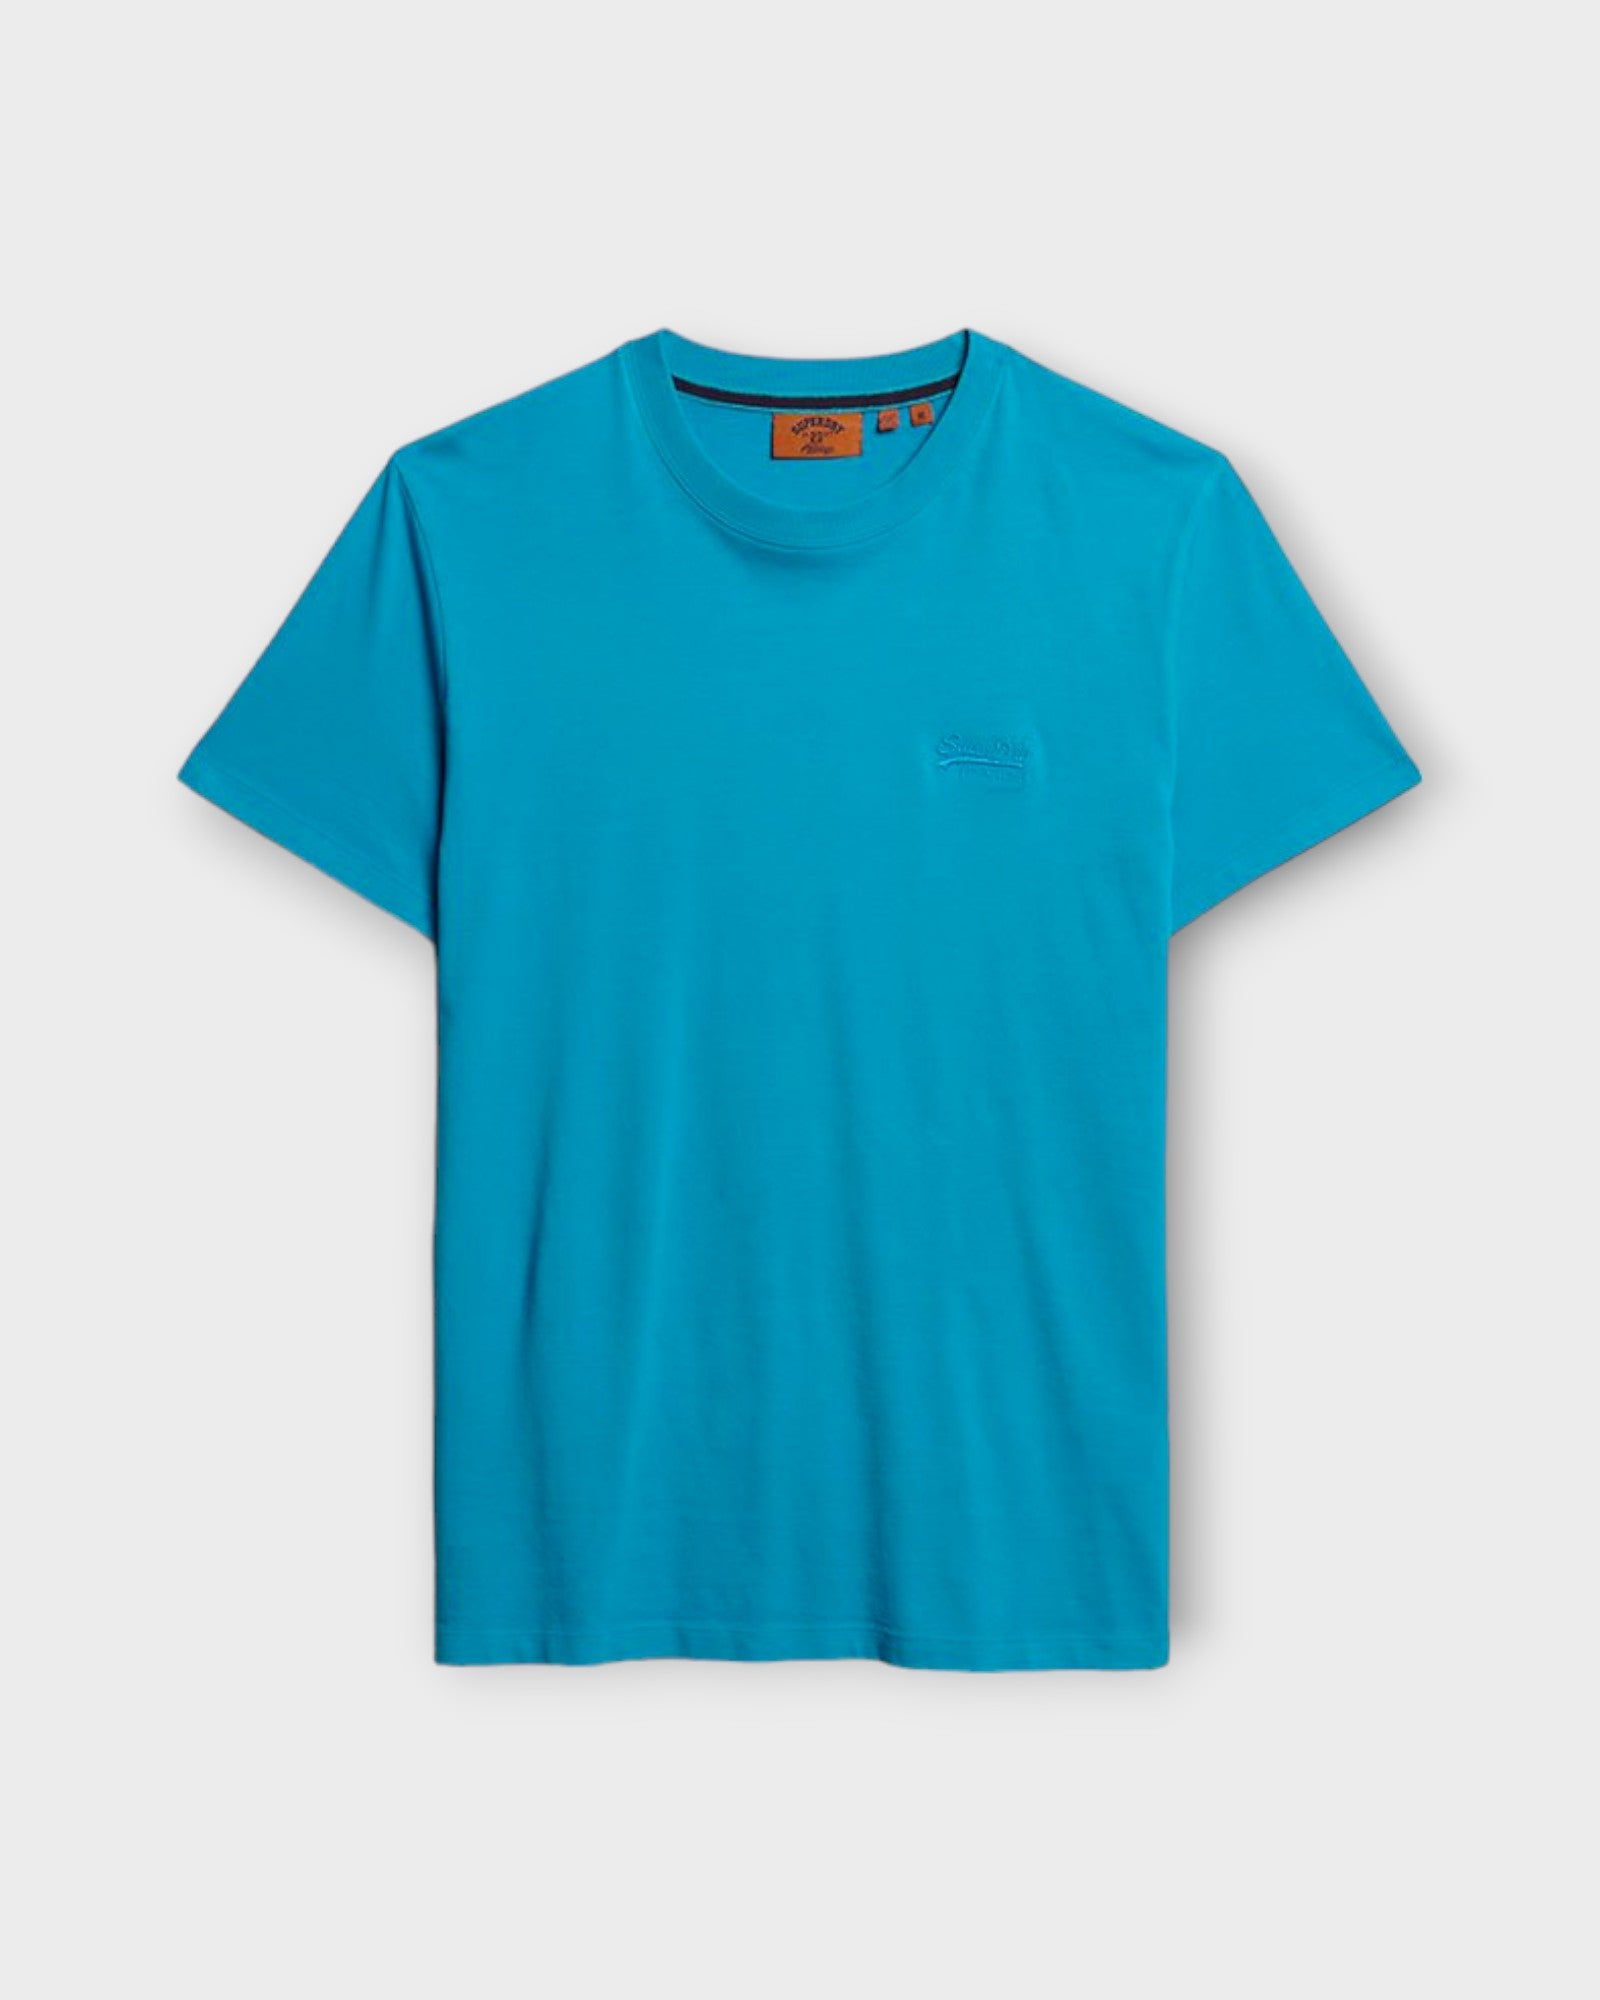 Essential Logo Emb Tee Atomic Blue fra Superdry. Neon blå kortærmet T-shirt til mænd. Her set forfra.